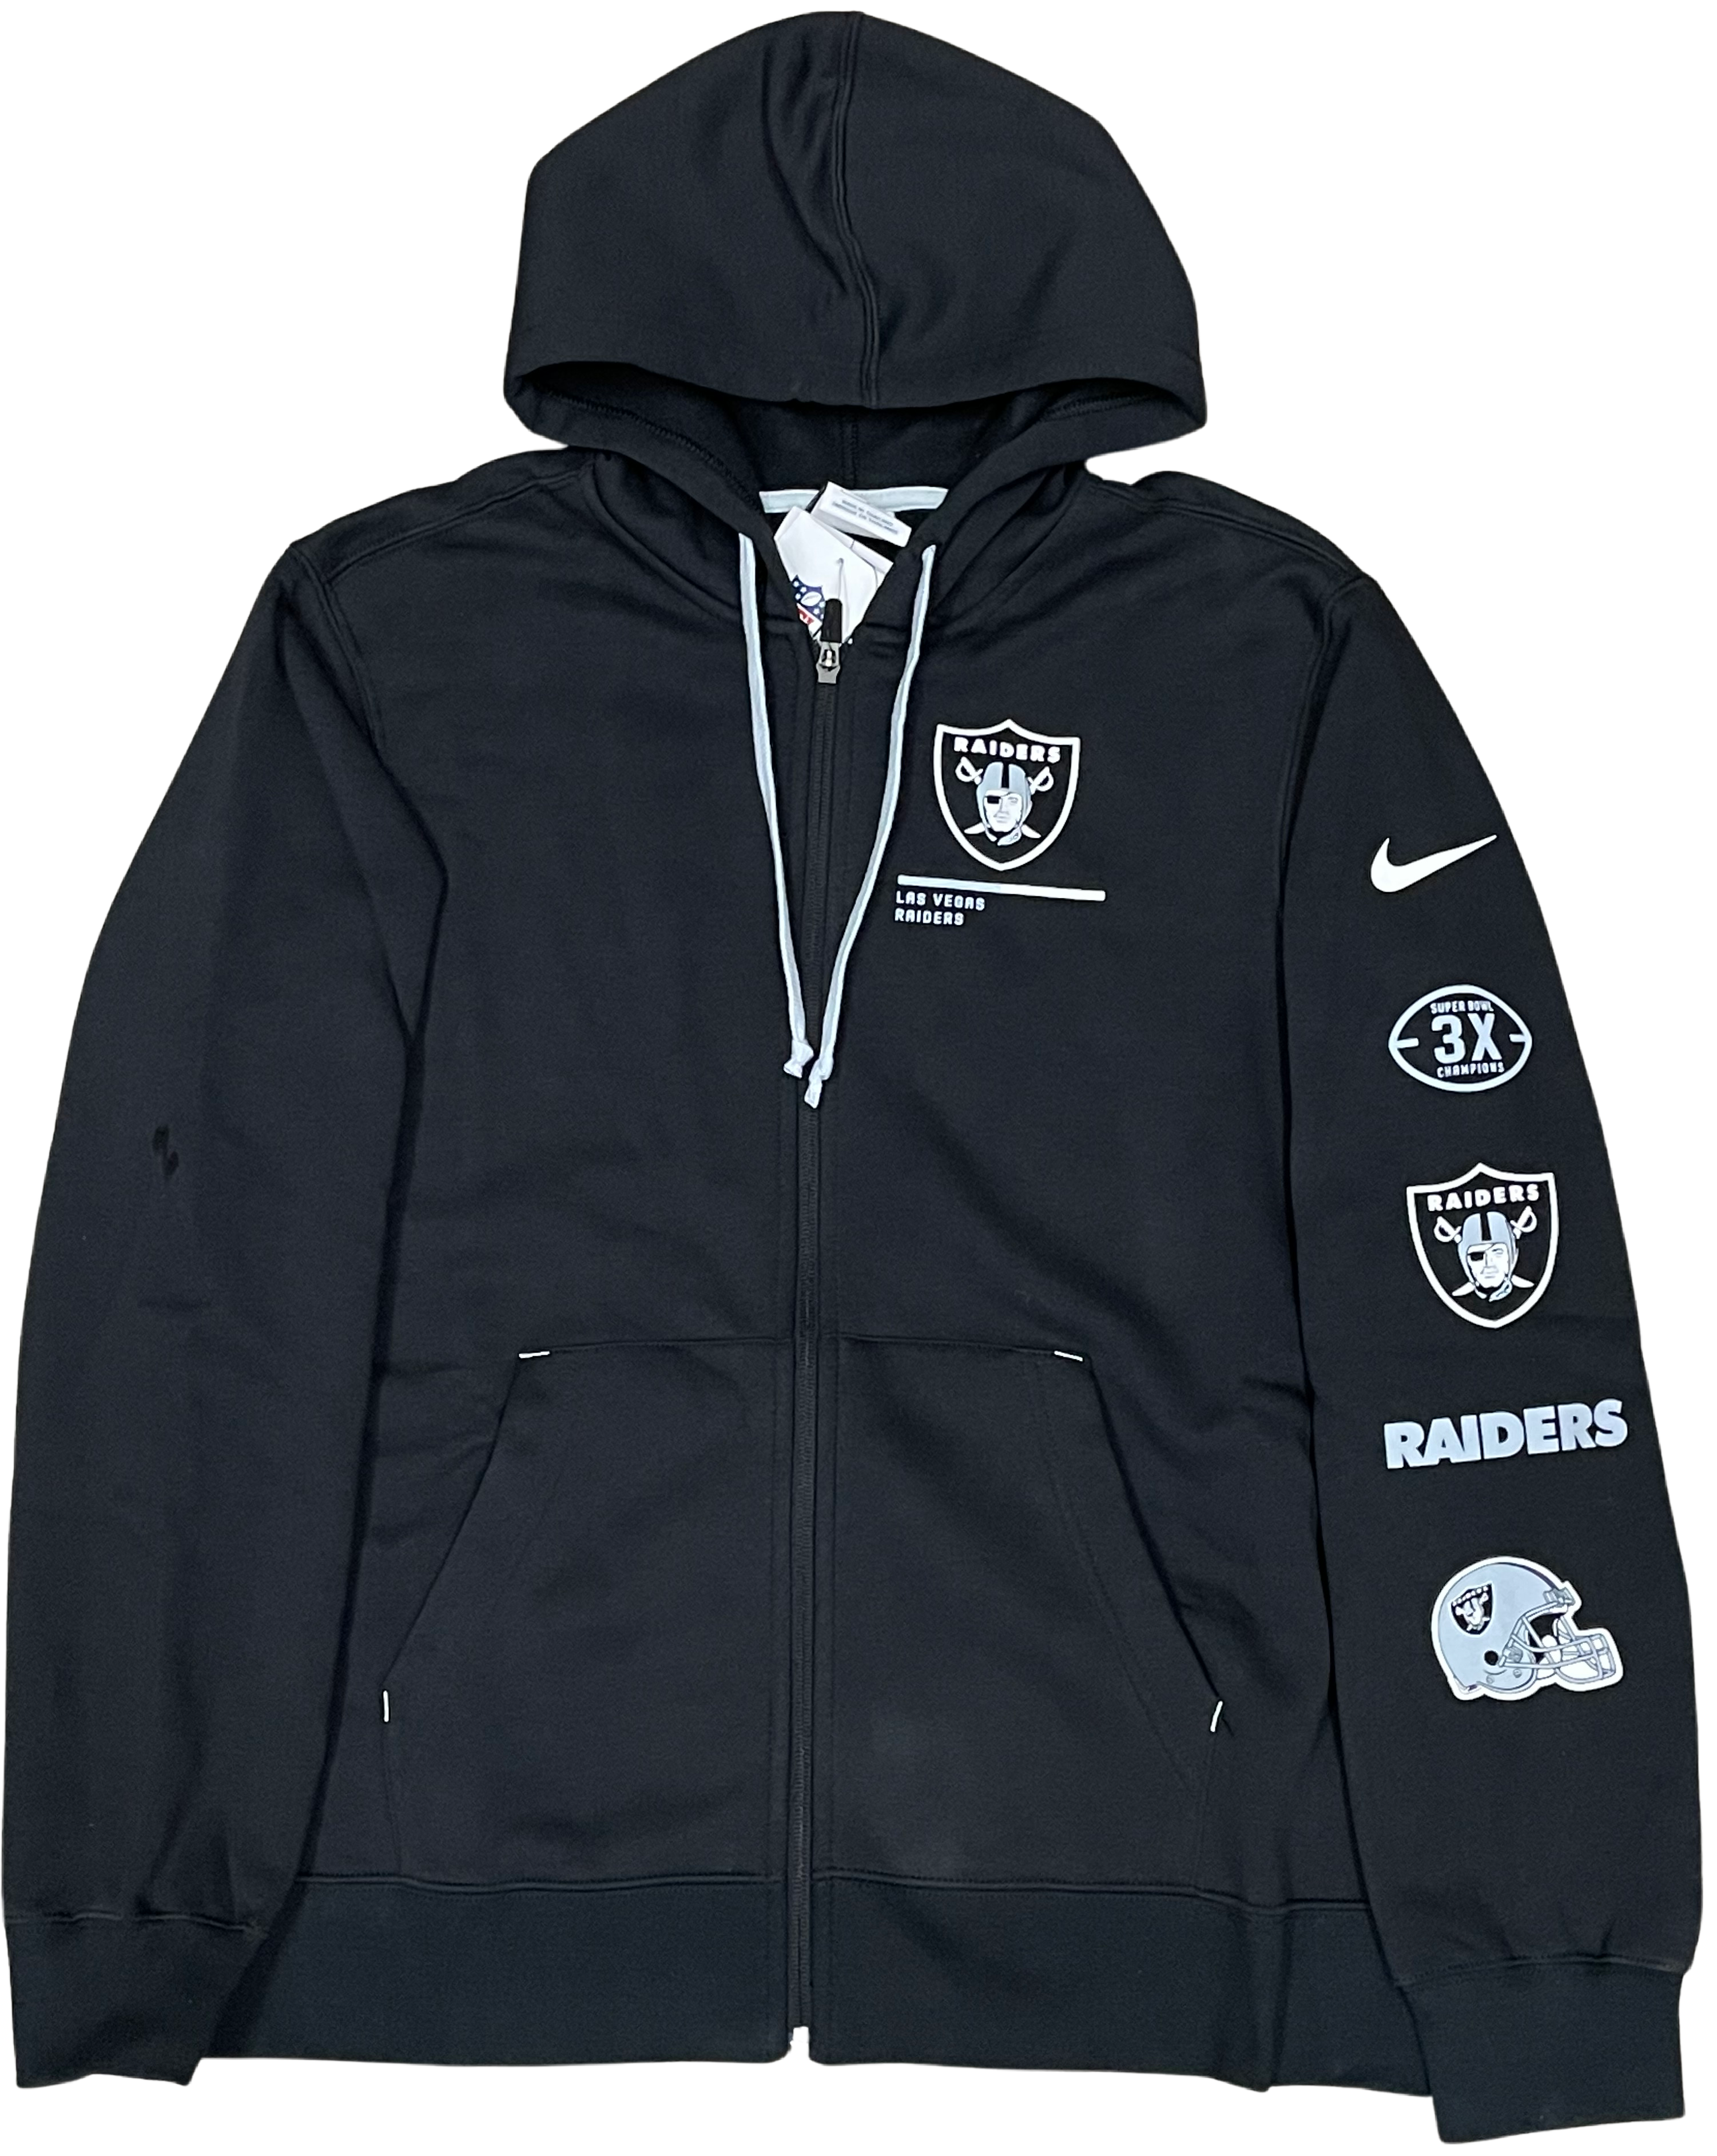 Nike Men's Las Vegas Raiders NFL Field Sudadera Full-Zip Hoody - black